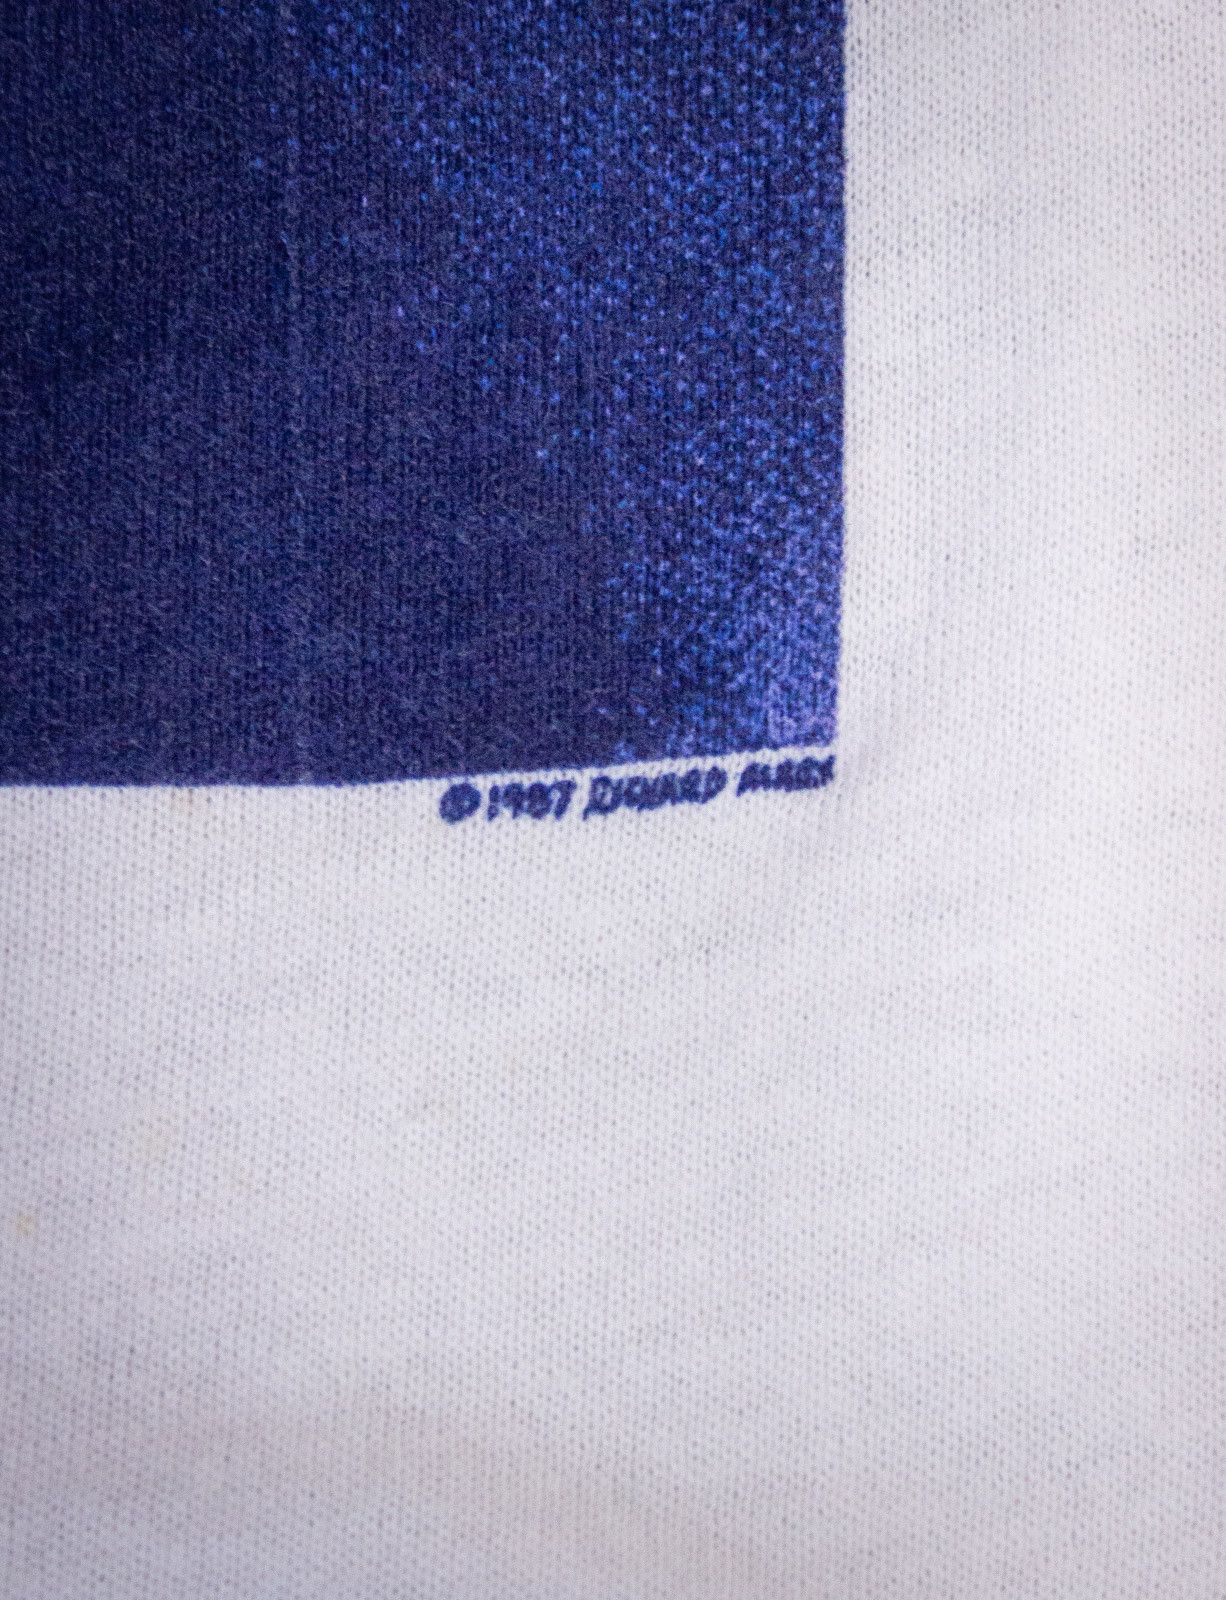 Vintage Vintage Richard Marx Concert T shirt 1987 Size US M / EU 48-50 / 2 - 5 Preview